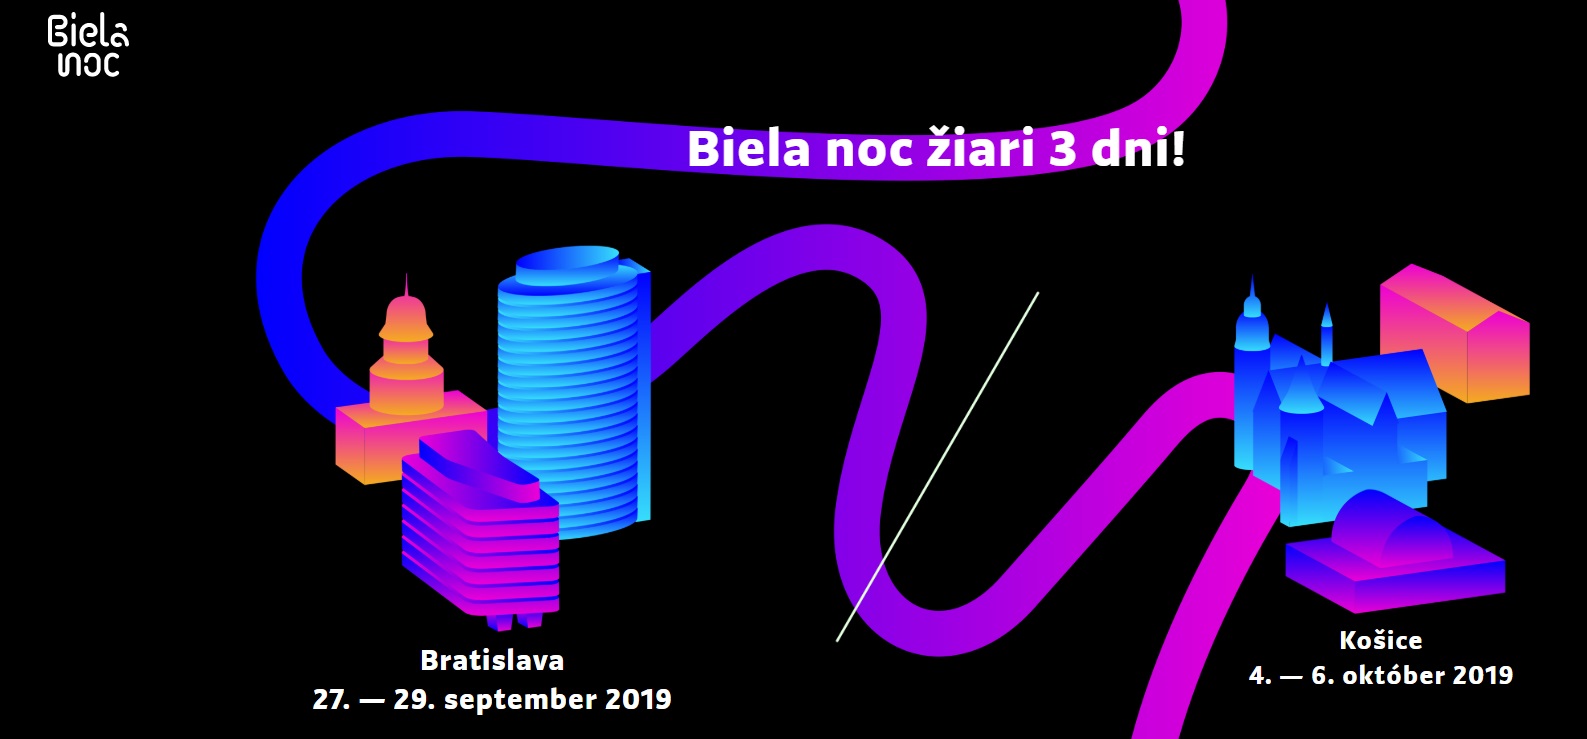 Biela noc Bratislava 2019 - 5. ronk